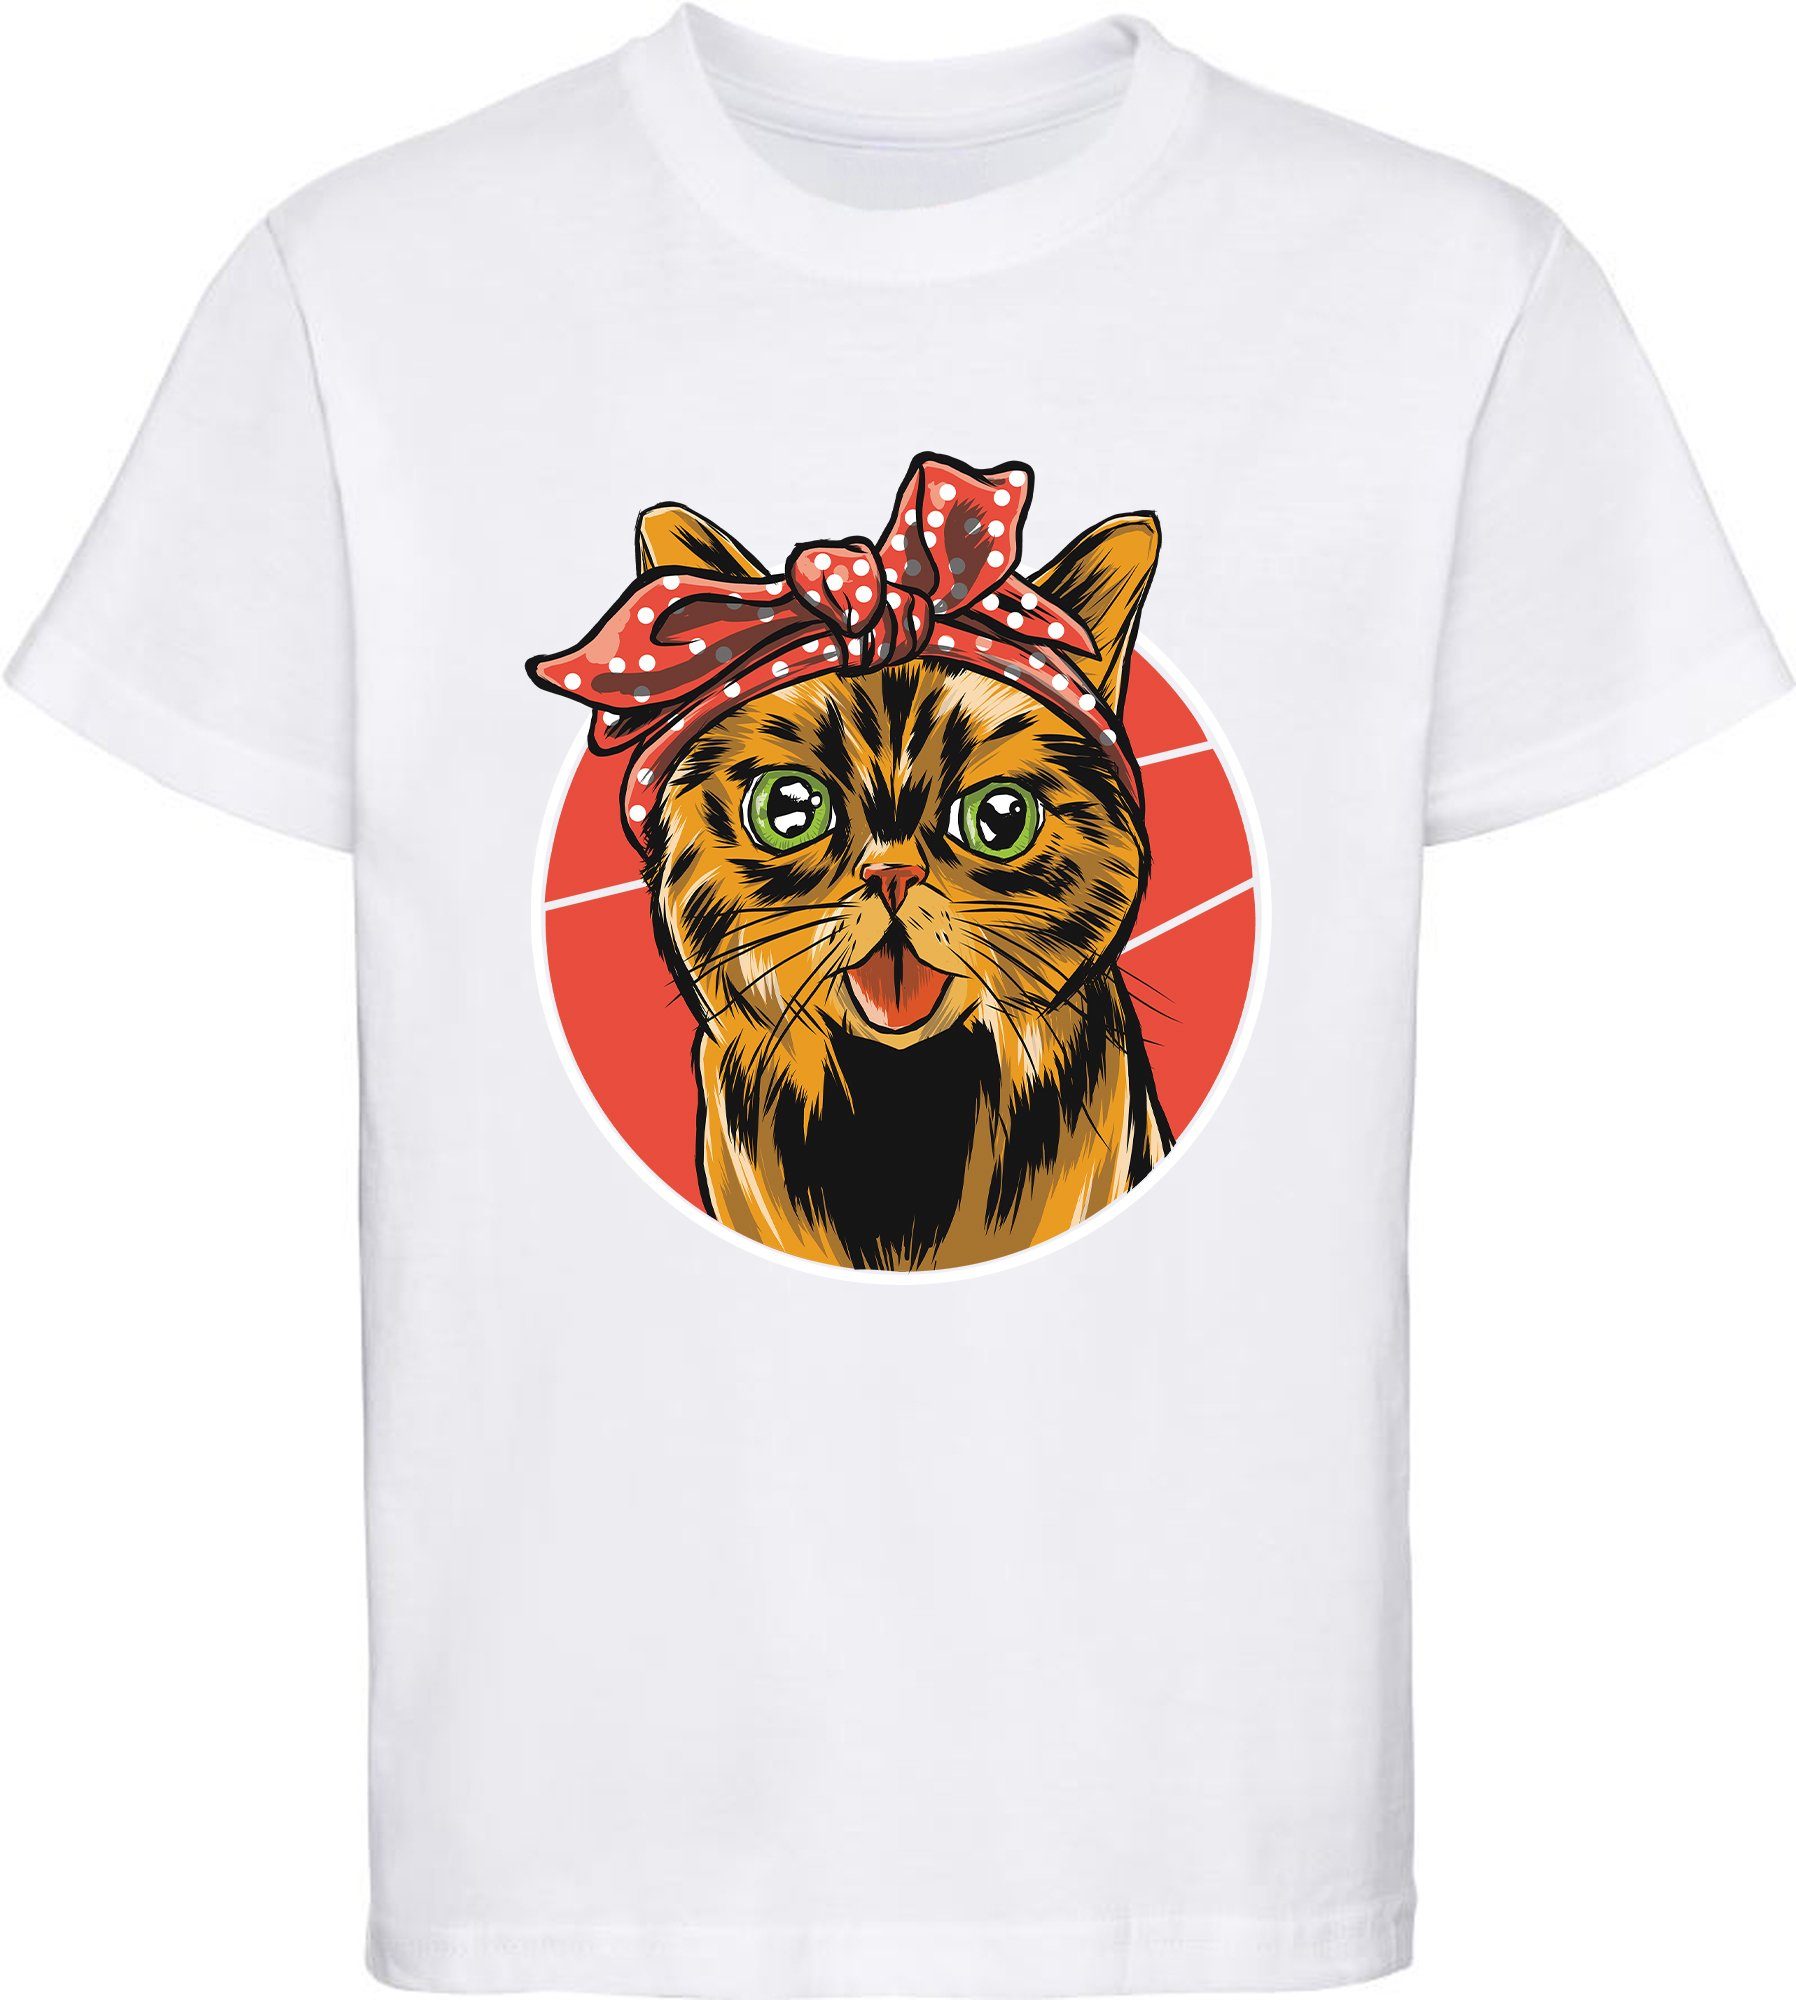 MyDesign24 Print-Shirt bedrucktes Kinder Mädchen schwarz, weiss Baumwollshirt mit T-Shirt weiß, Katze, i103 Schleife rosa, rot, mit Katze